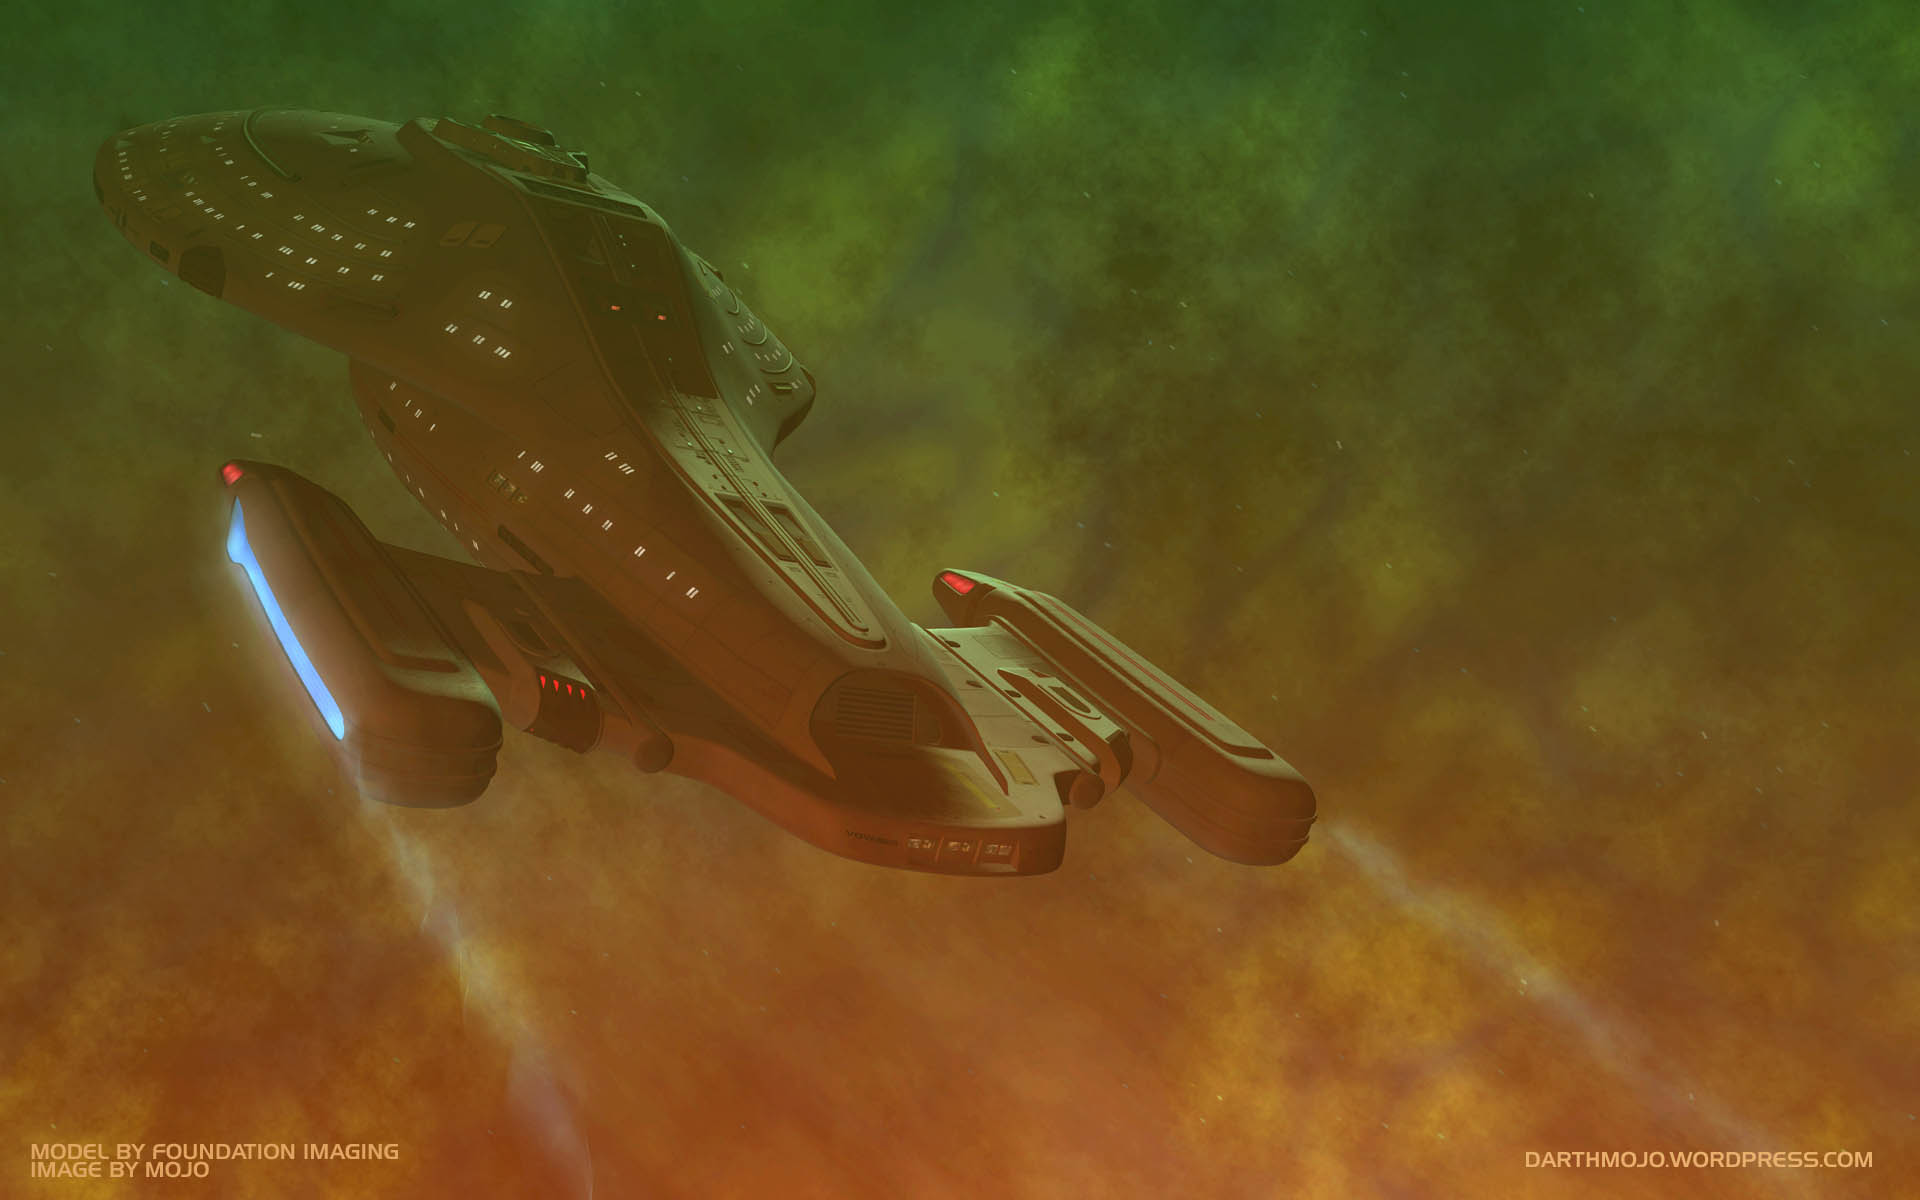 U.S.S. Voyager fliegt durch den fluiden Raum in "Scorpion, Part II" (Bild: Nutzung mit freundlicher Erlaubnis von Adam "Mojo" Lebowitz)